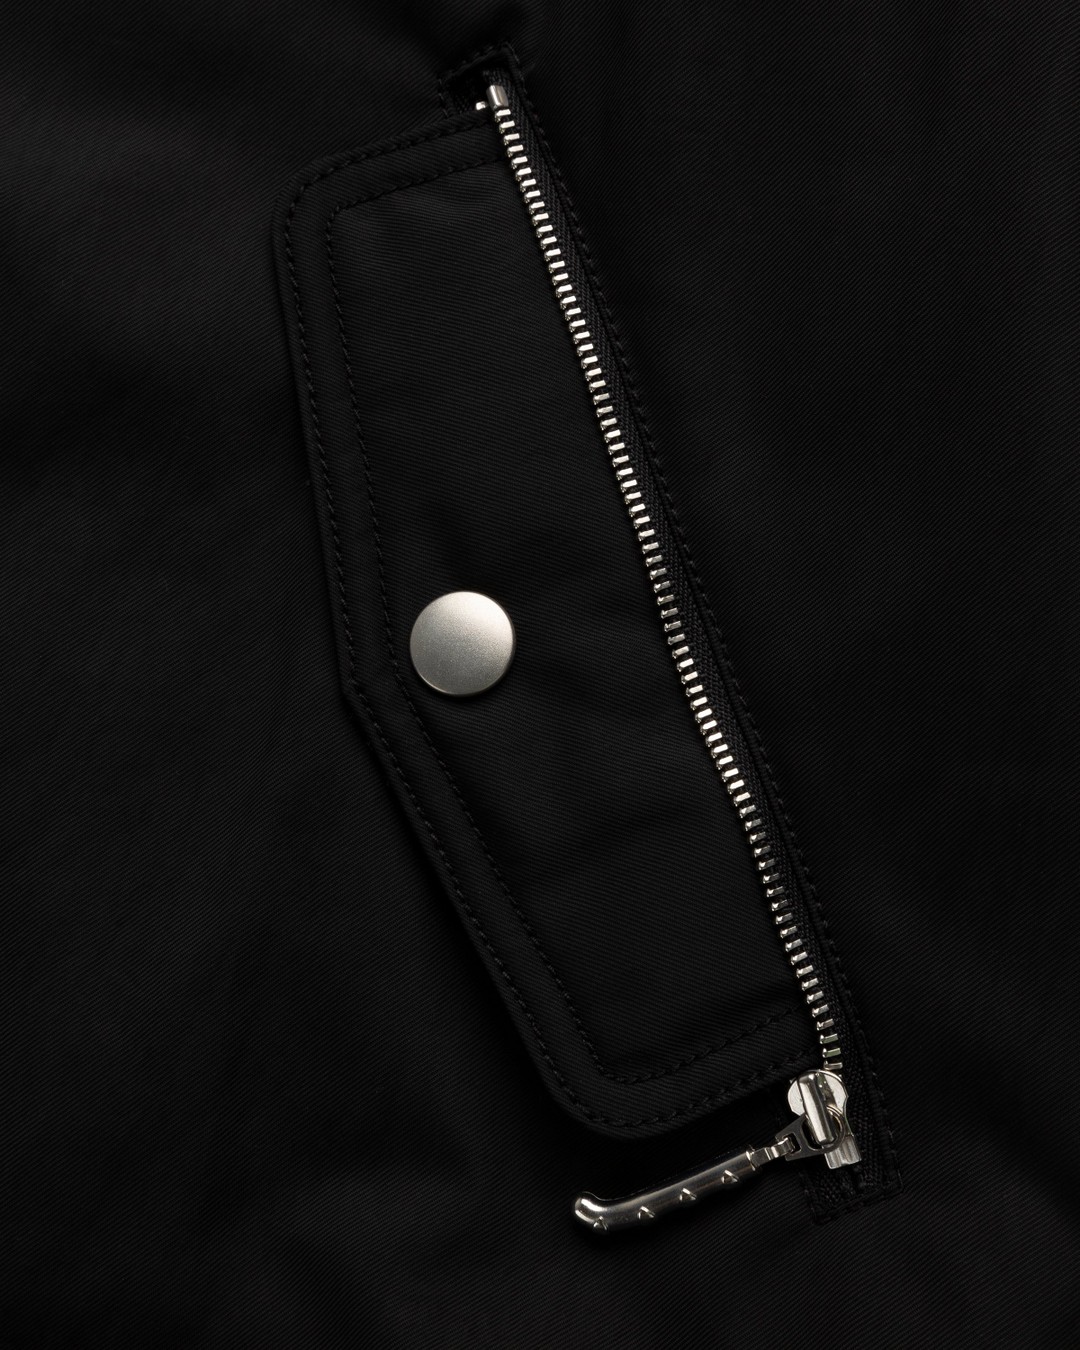 Kenzo – Varsity Bomber Jacket Black - Outerwear - Black - Image 6